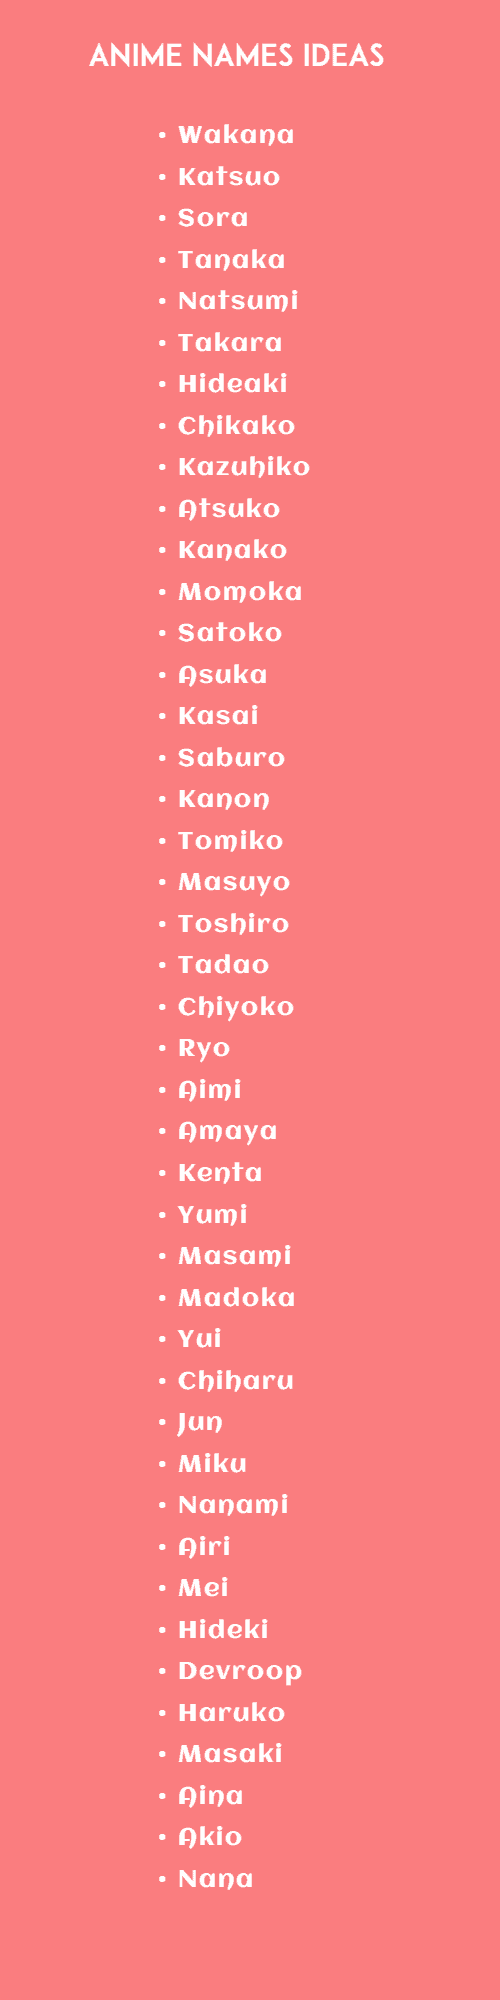 anime character names